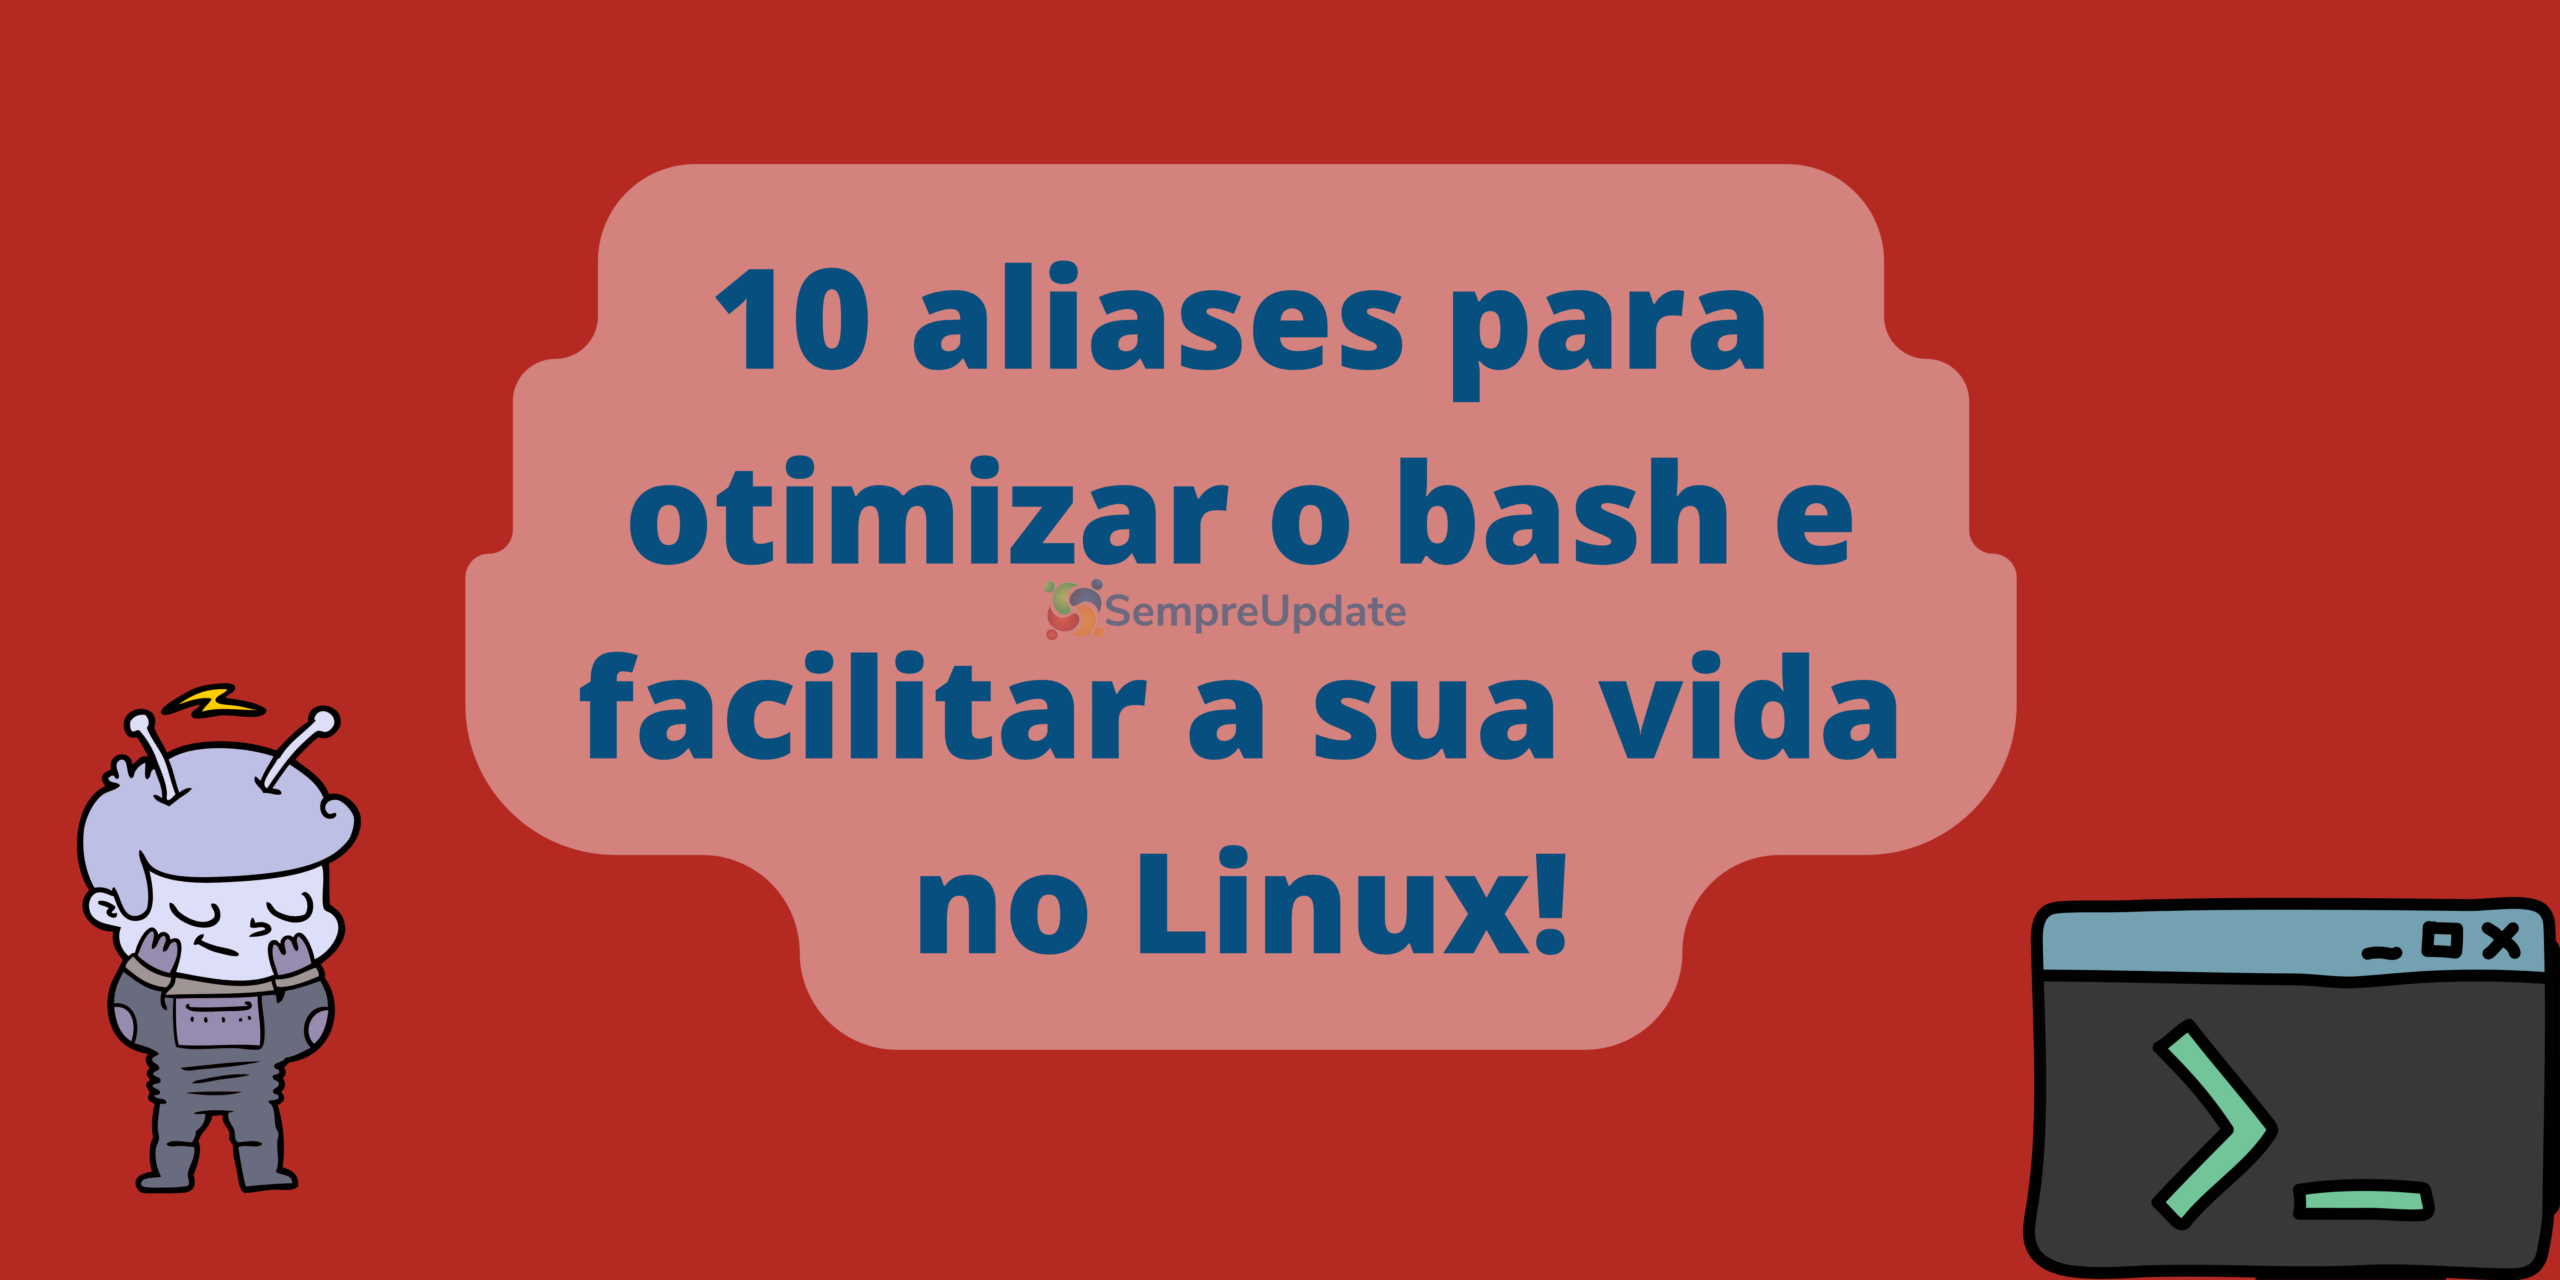 10 aliases para otimizar o bash e facilitar a sua vida no Linux!